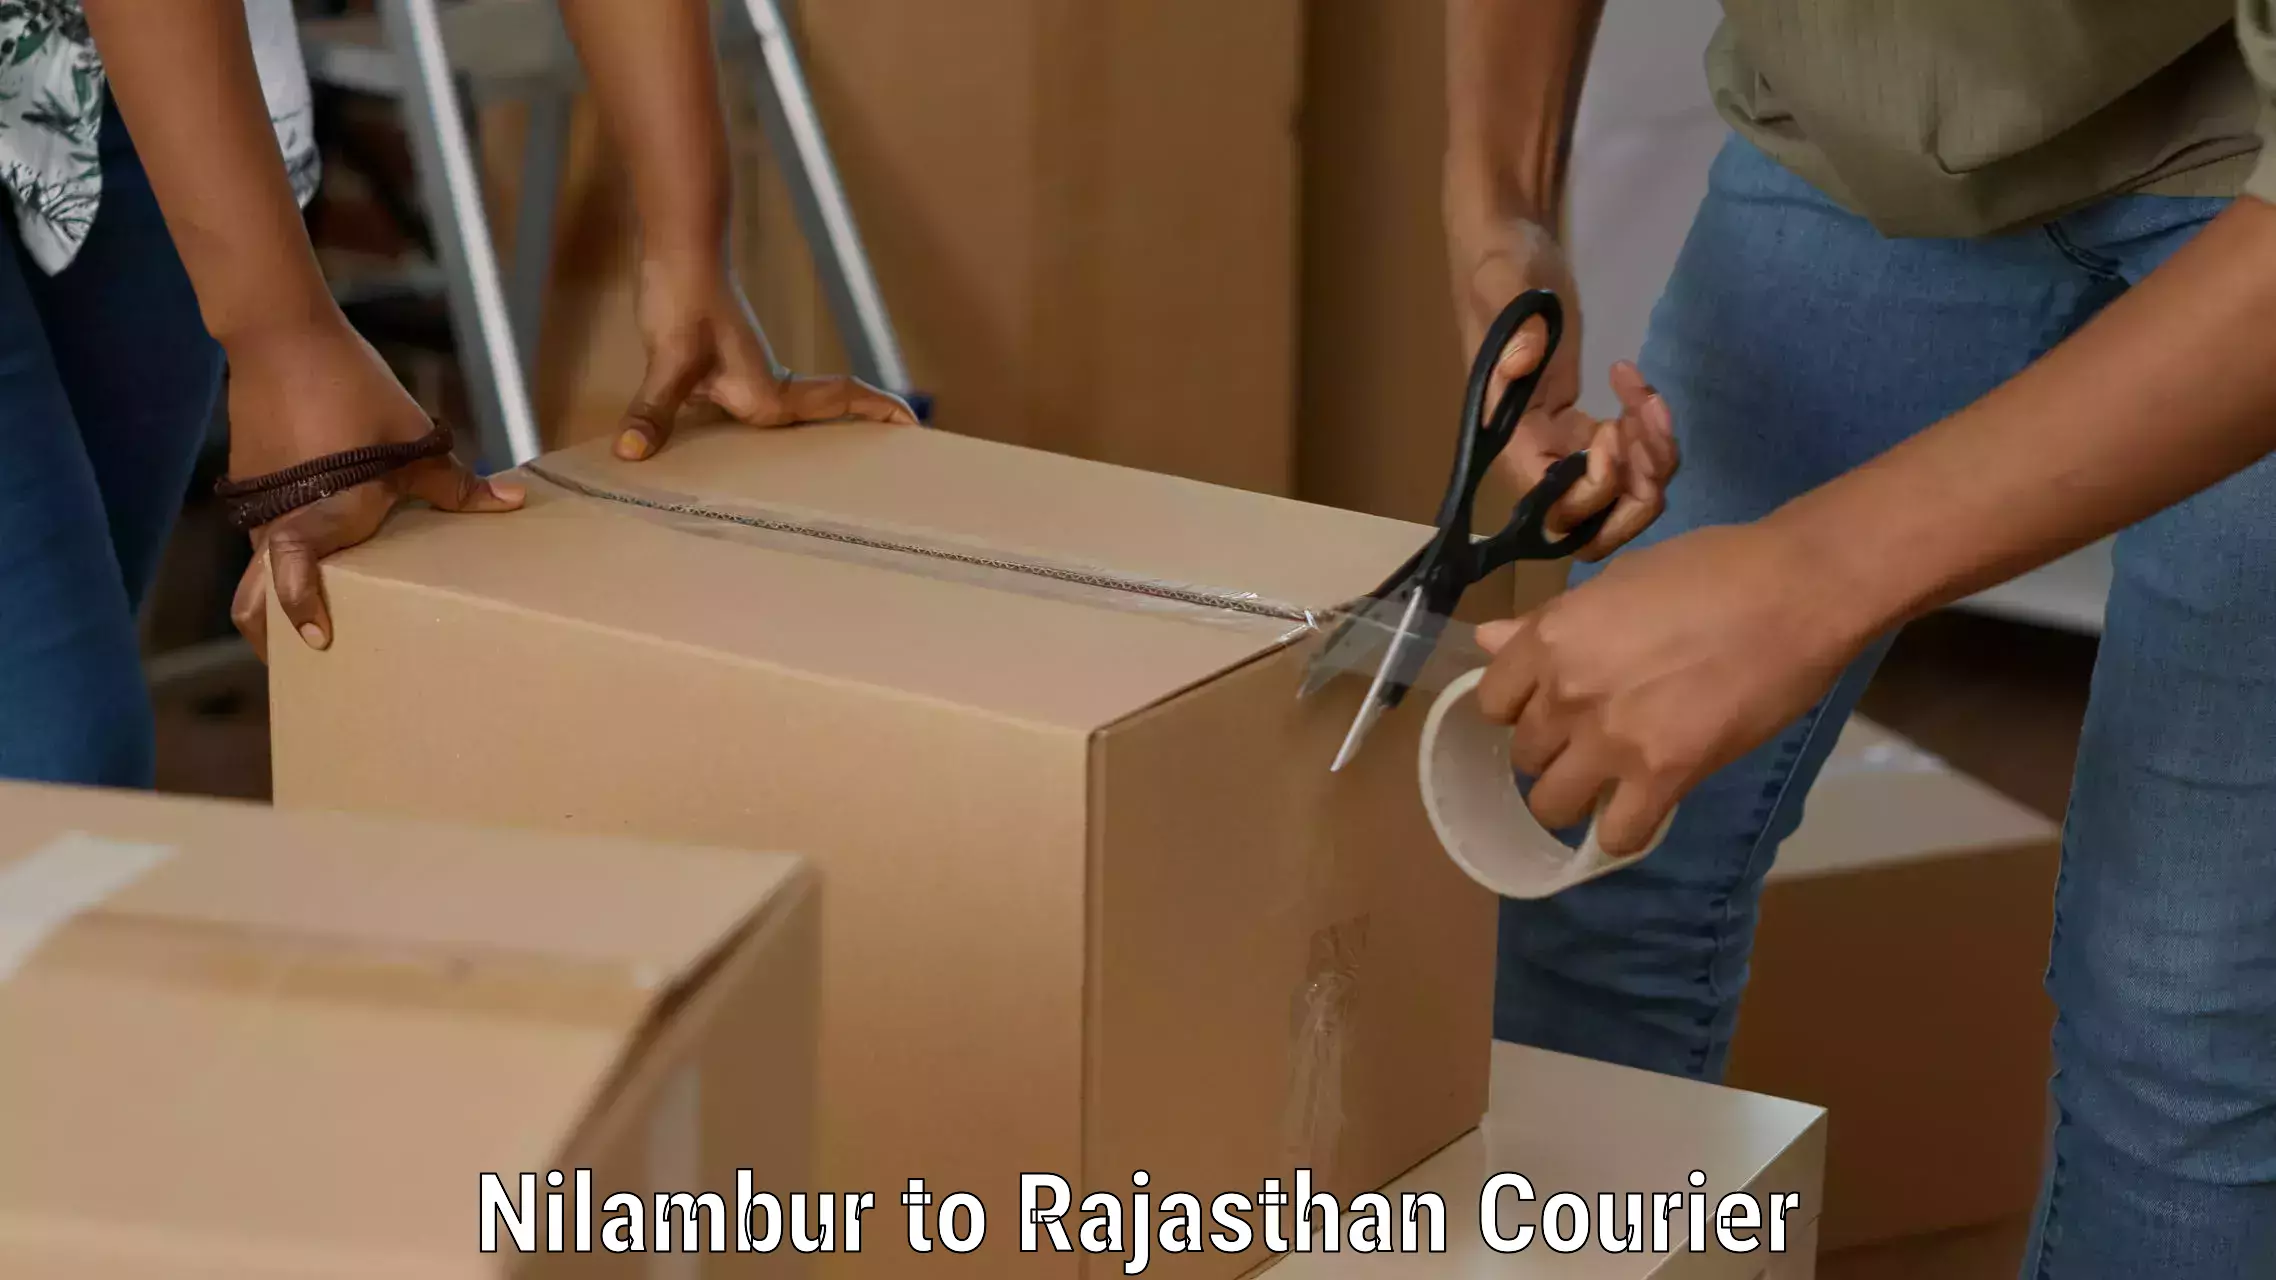 Courier app Nilambur to Pratapgarh Rajasthan